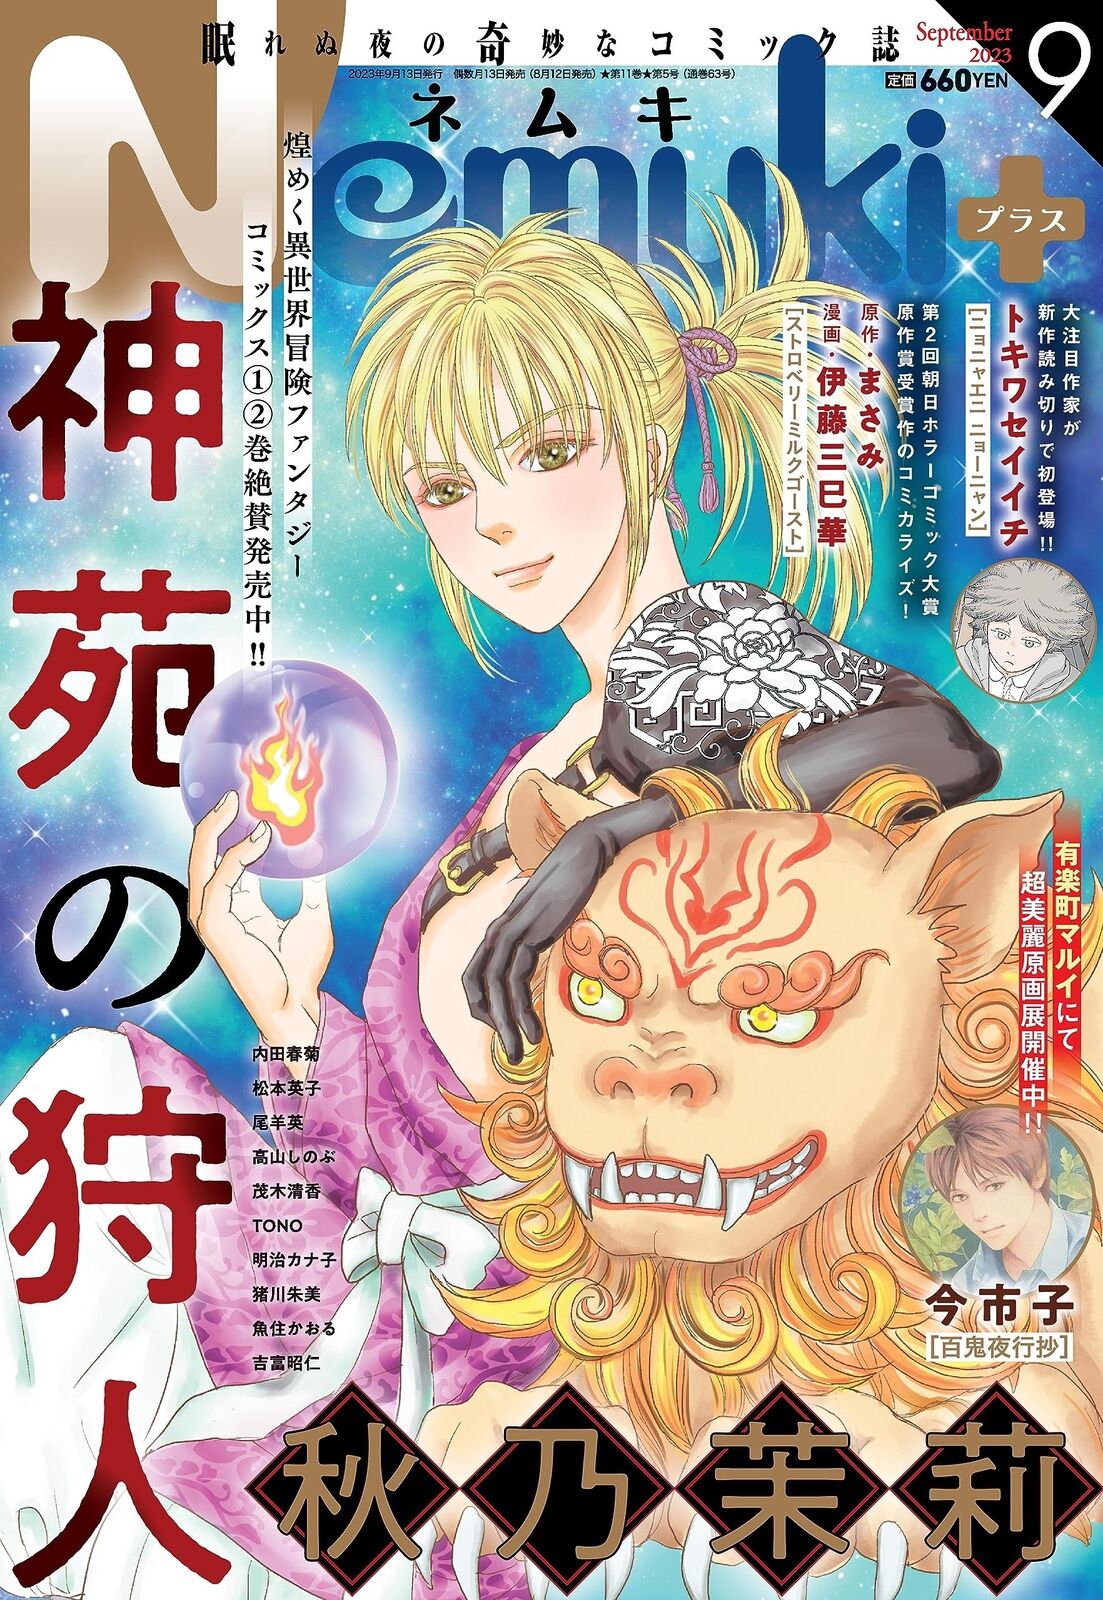 Nemuki+ Sep 2023 Japanese Magazine manga Shinen no karyudo Ichiko Ima New